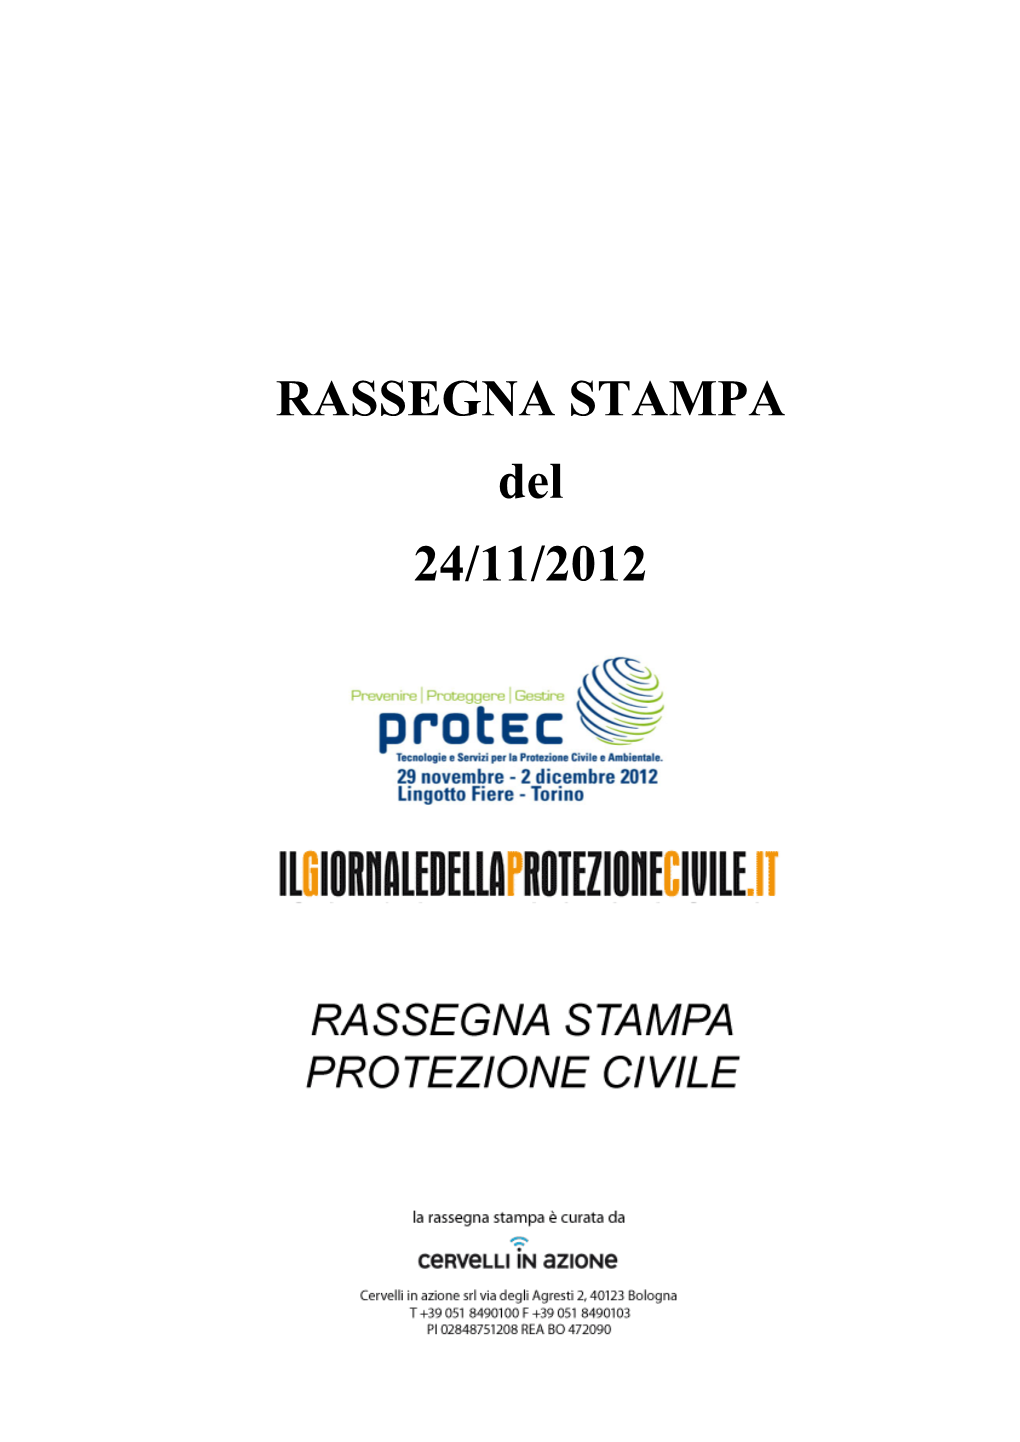 Download Rassegna Stampa Protezione Civile 24 Novembre